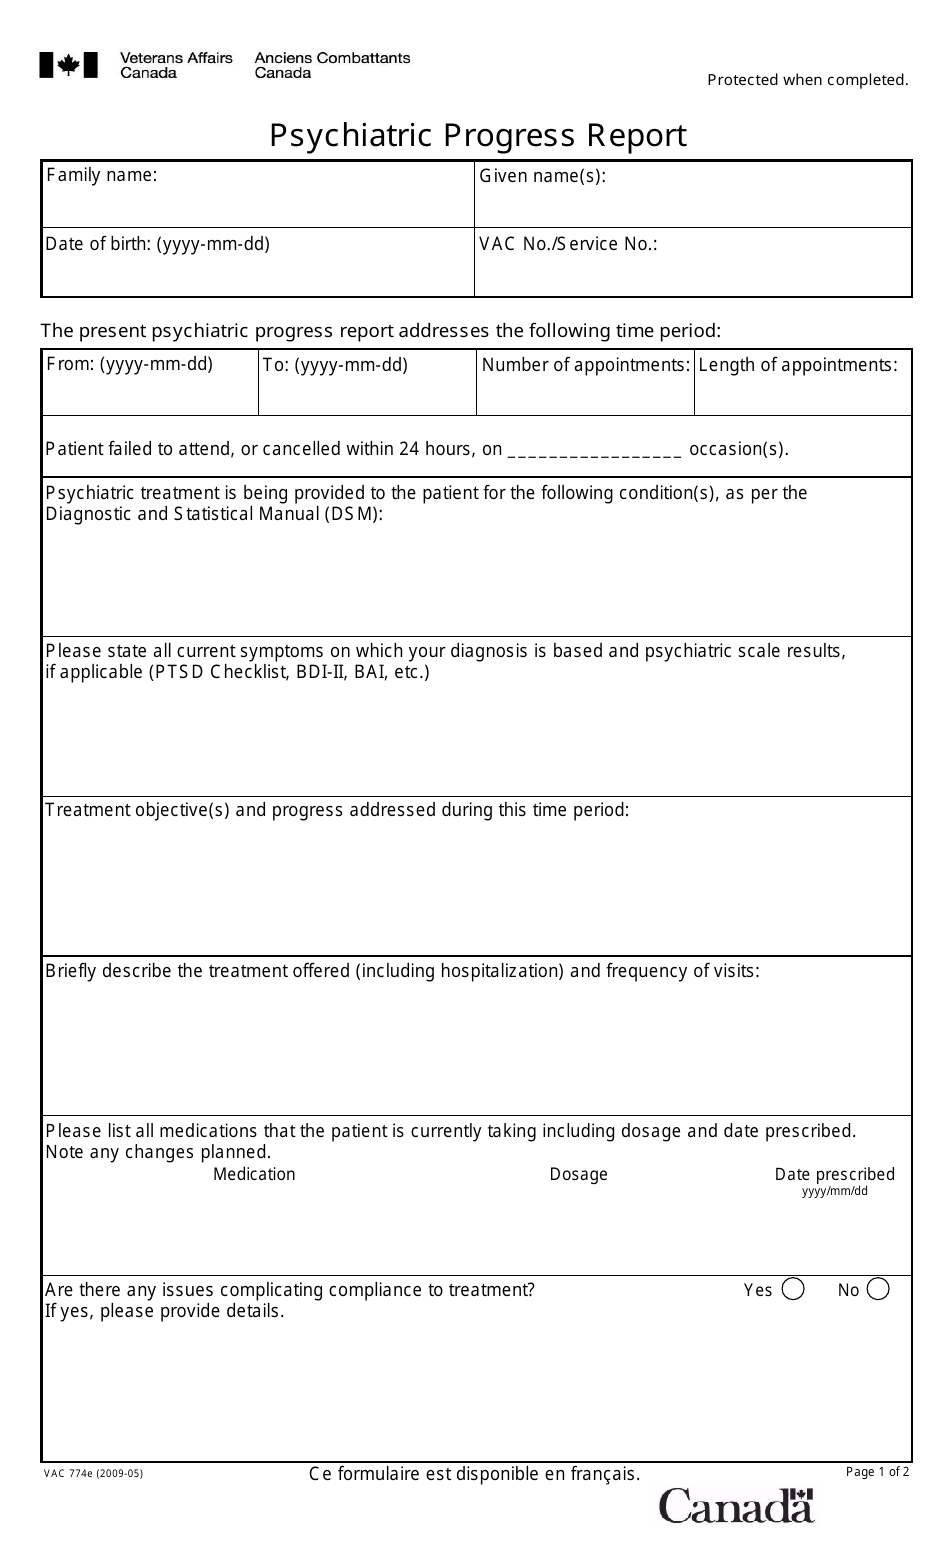 Form VAC774E Psychiatric Progress Report - Canada, Page 1